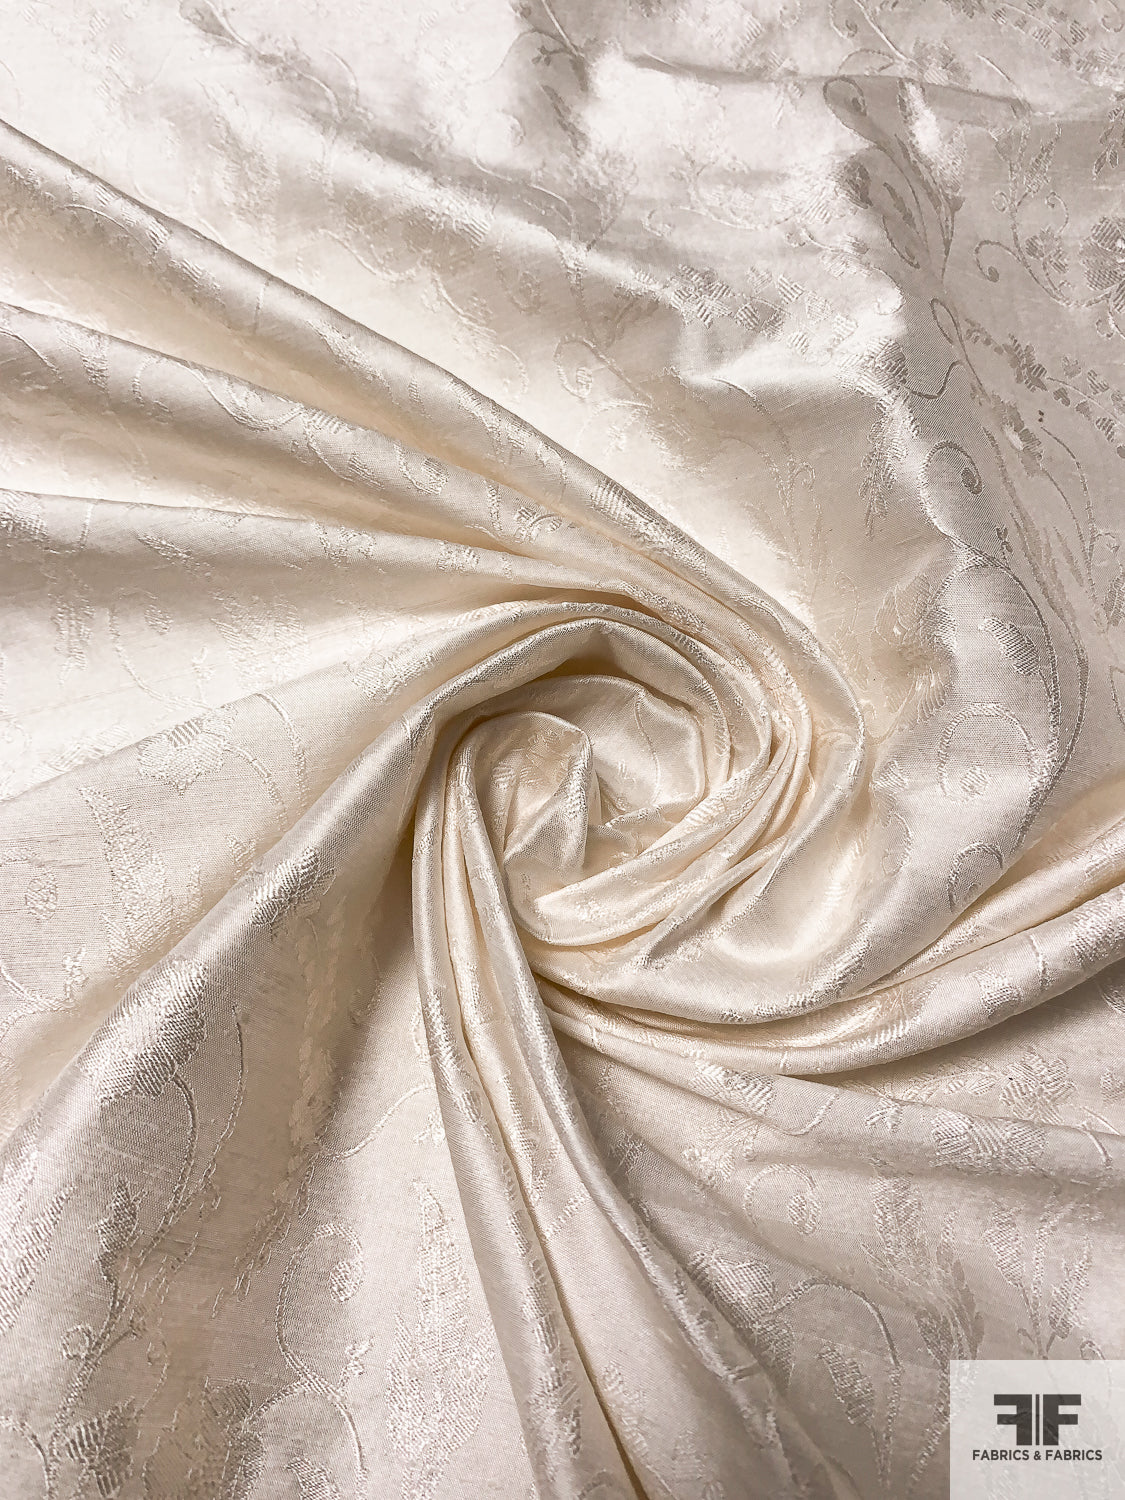 SILK SATIN FABRICS – Beautiful satins made of natural silk